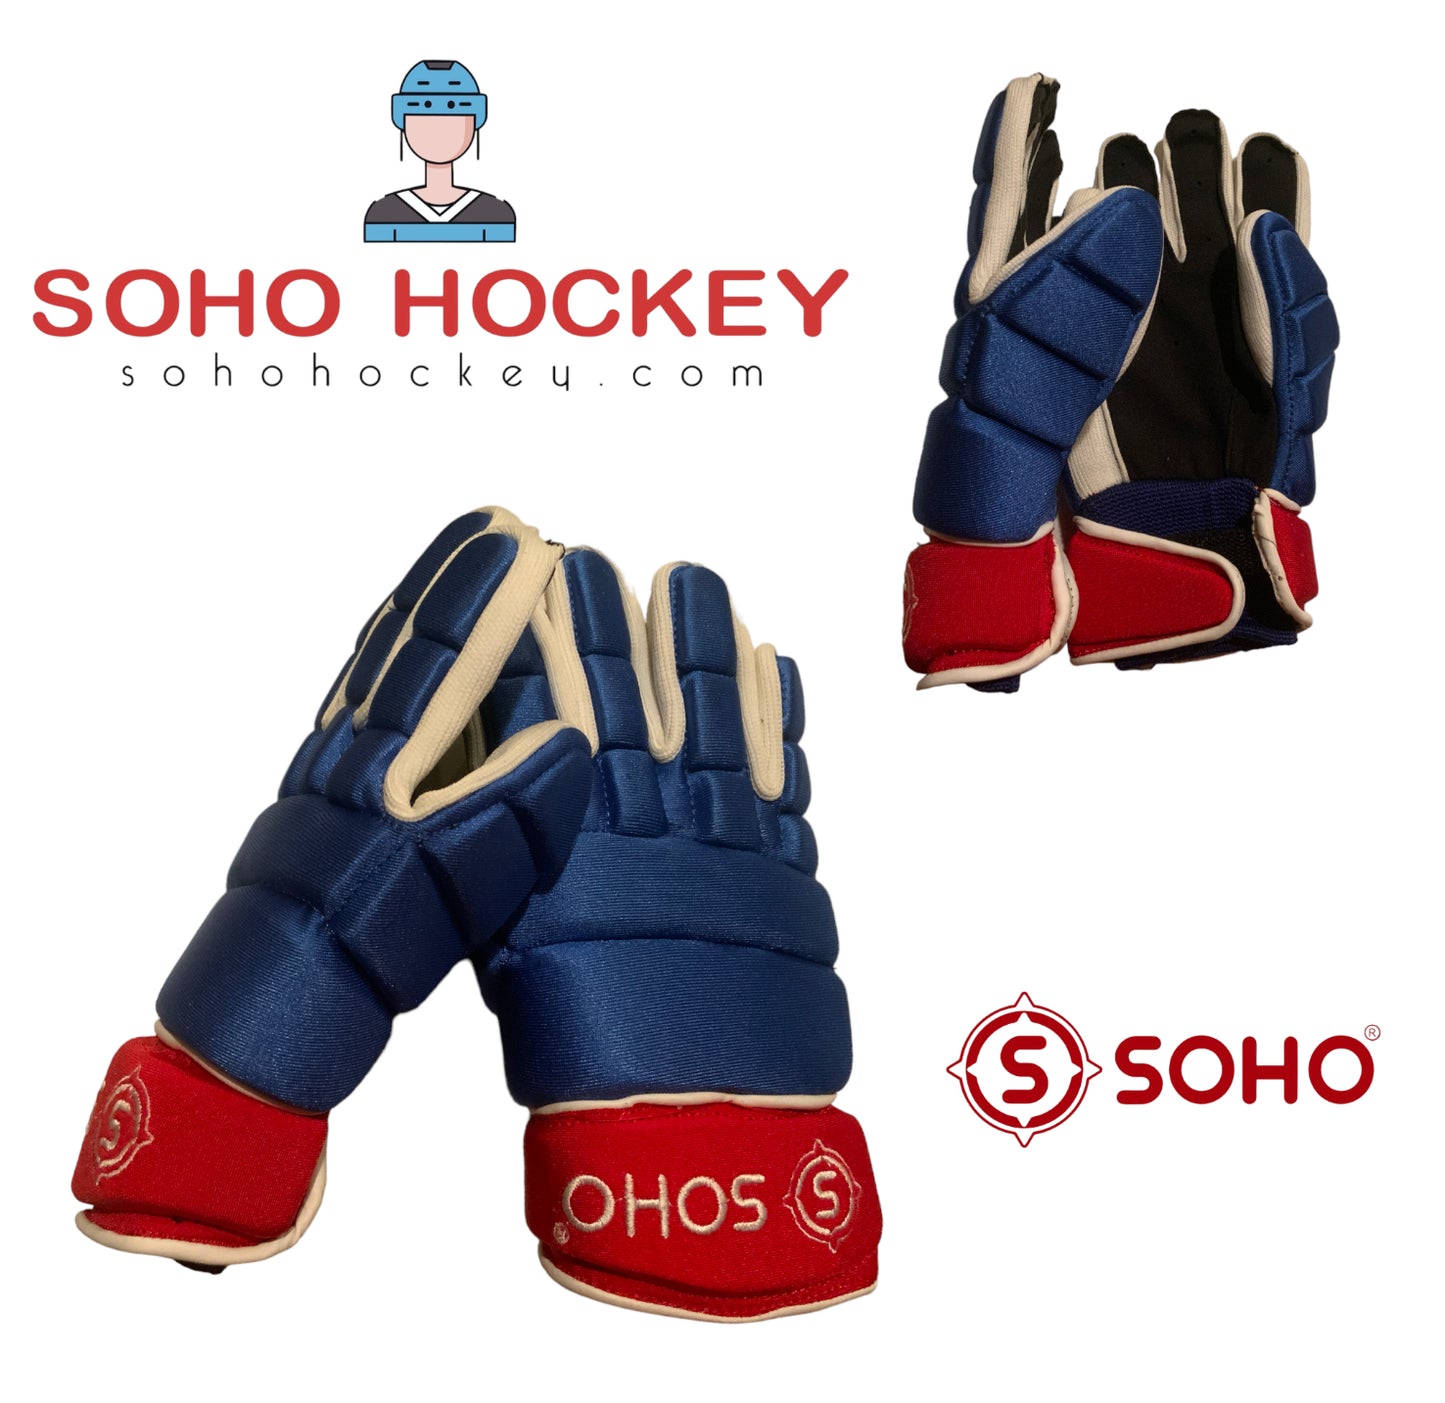 SOHO Series 1 Ball Hockey Glove